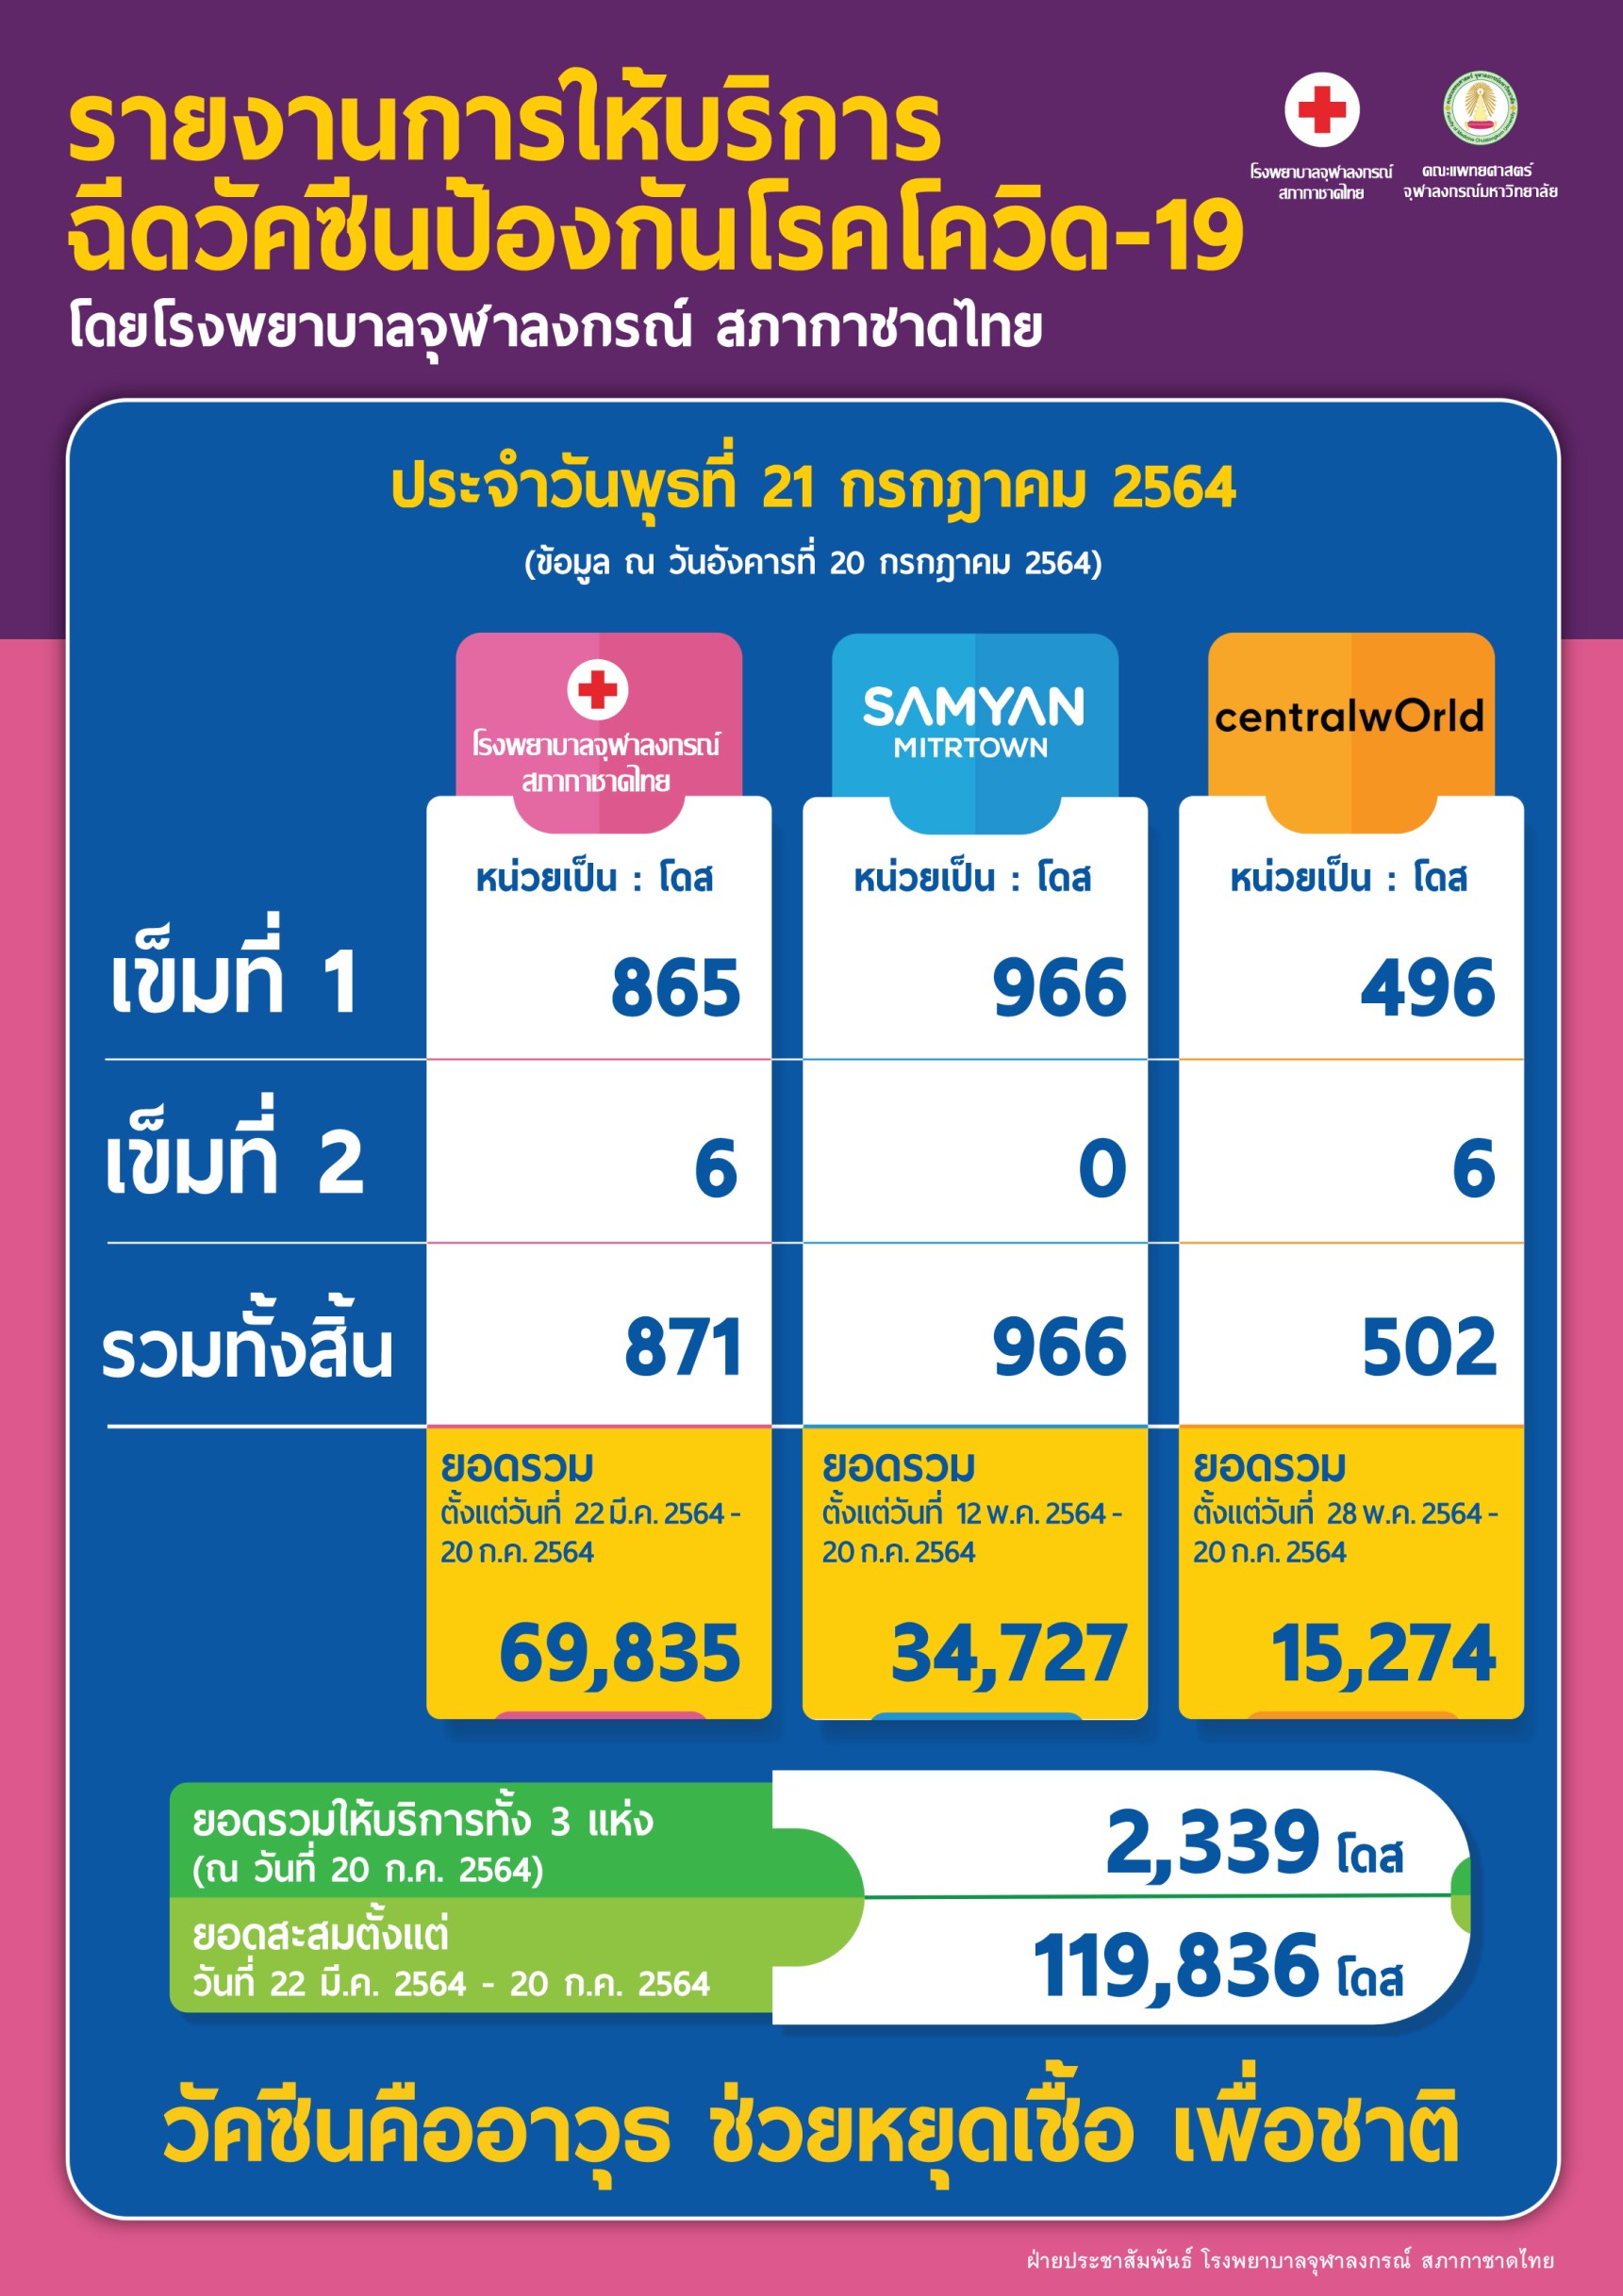 รายงานการให้บริการฉีดวัคซีนป้องกันโรคโควิด-19 โดยโรงพยาบาลจุฬาลงกรณ์ สภากาชาดไทย ประจำวันพุธที่ 21 กรกฎาคม 2564